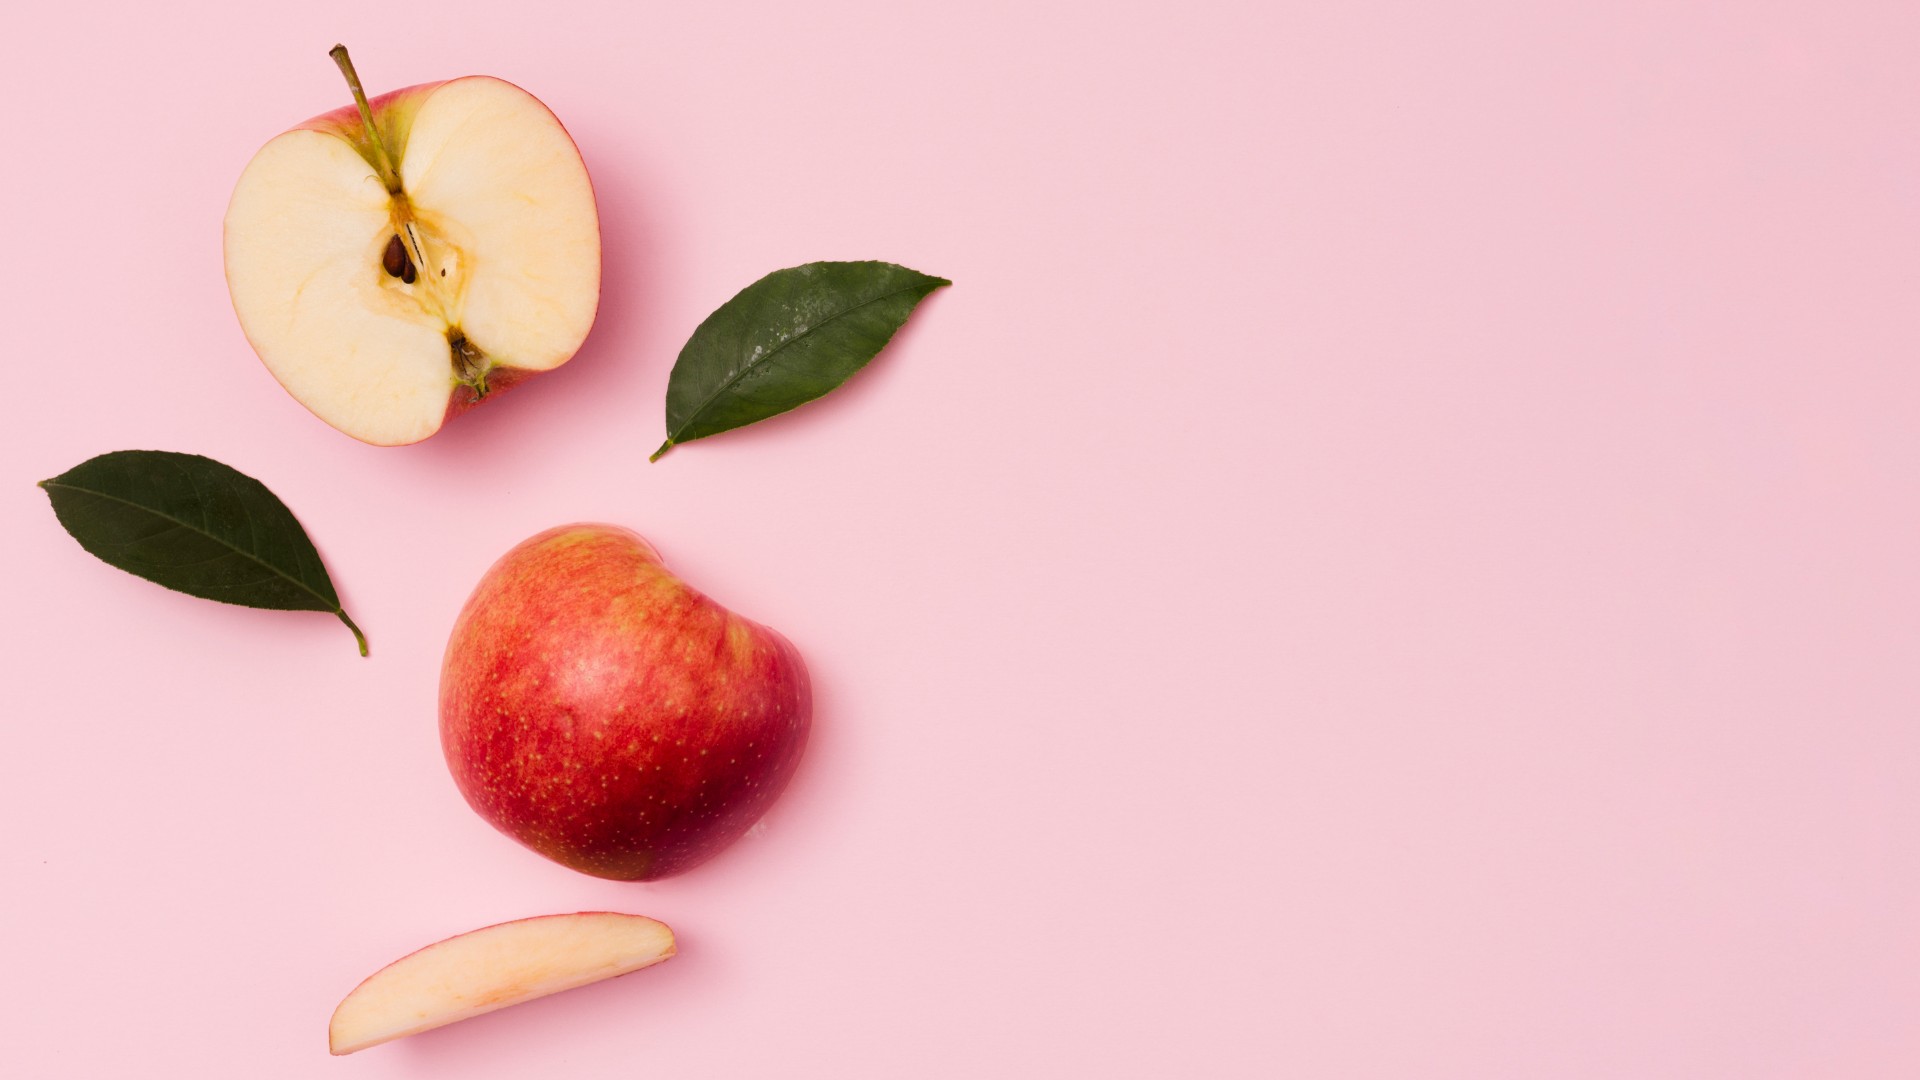 Foto de capa do artigo "Maçã: veja os nutrientes e quais os benefícios da fruta"